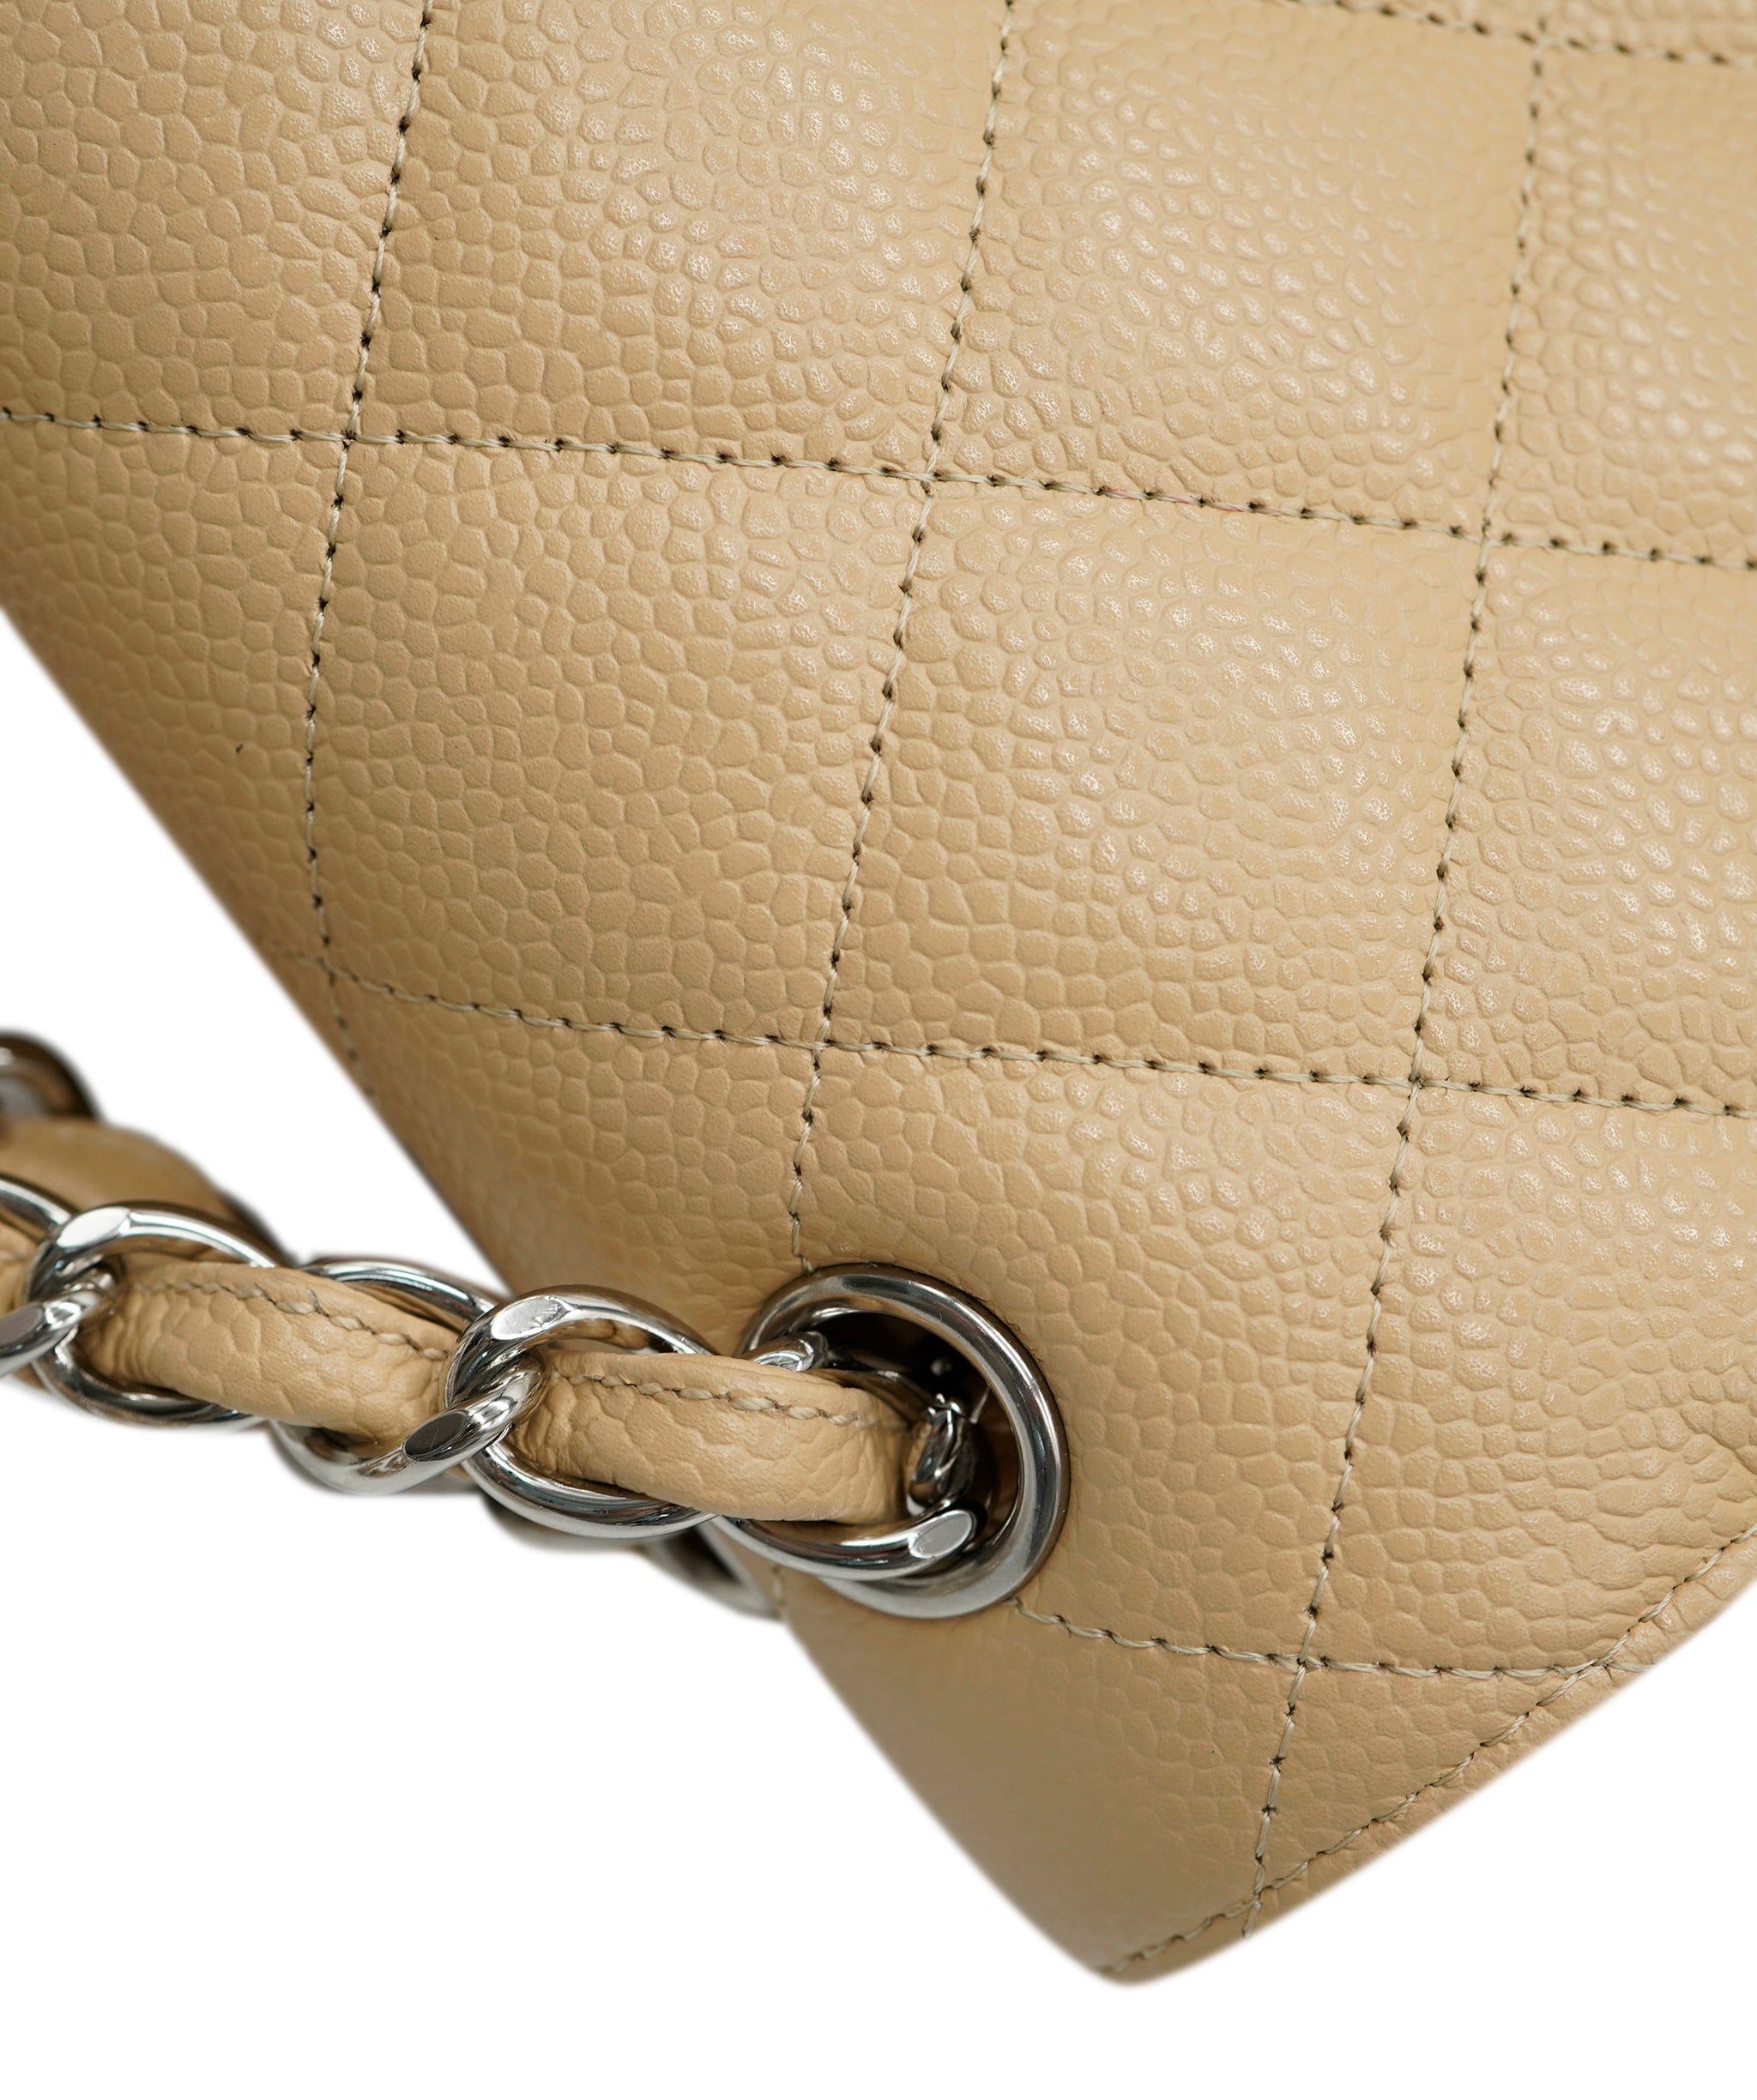 Chanel Chanel Beige Jumbo Bag  ALC0620